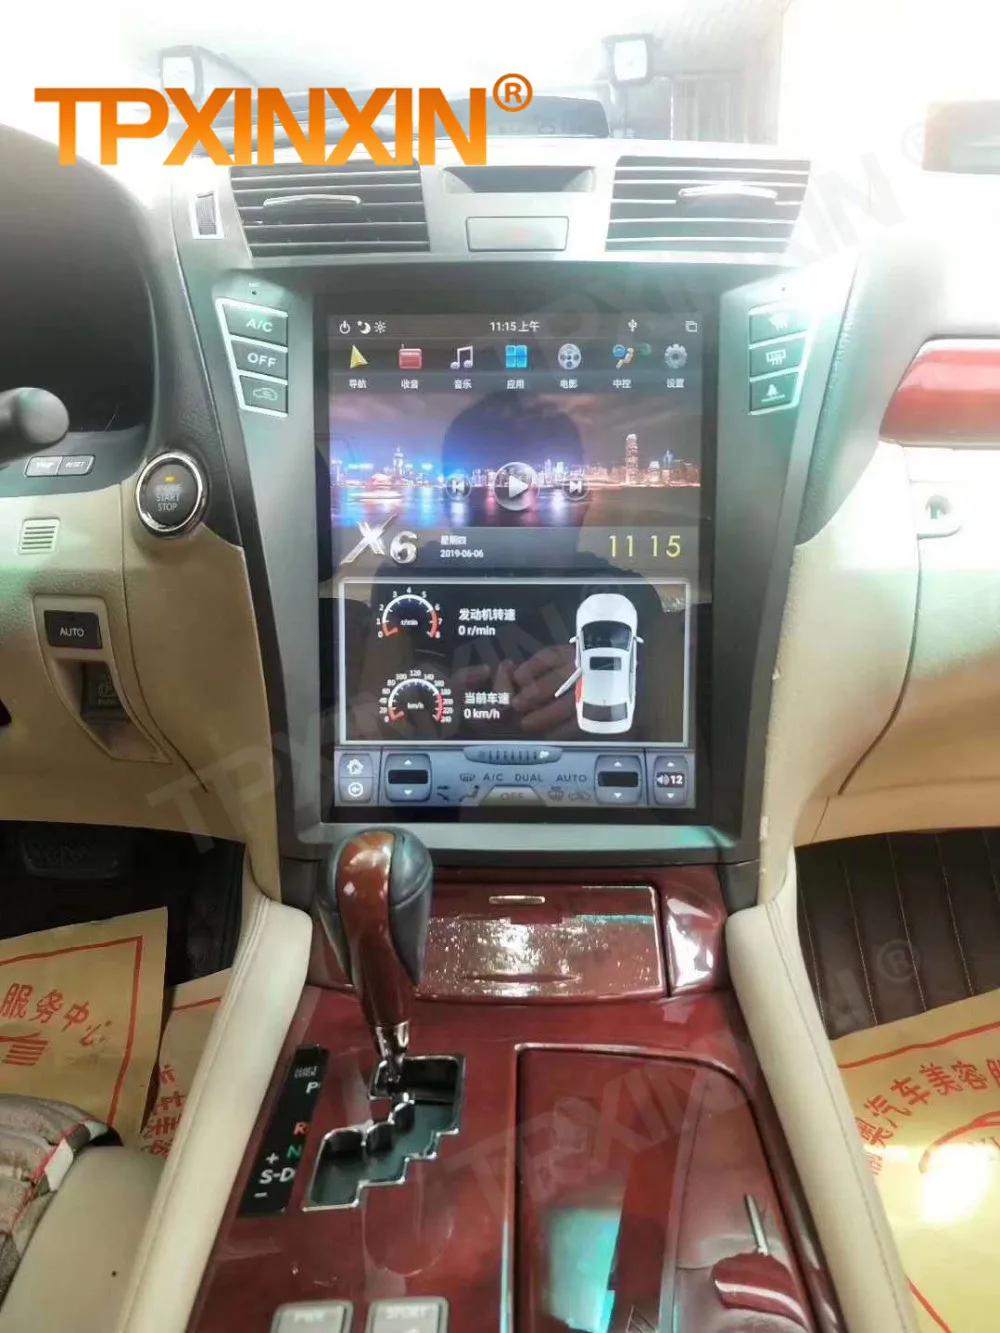 Tesla Képernyő Lexus LS460 2006 2007 2008 2009 2010 2011 2012 Android Videó Lejátszó Auto Audio Sztereó Rádió Vevő Egység